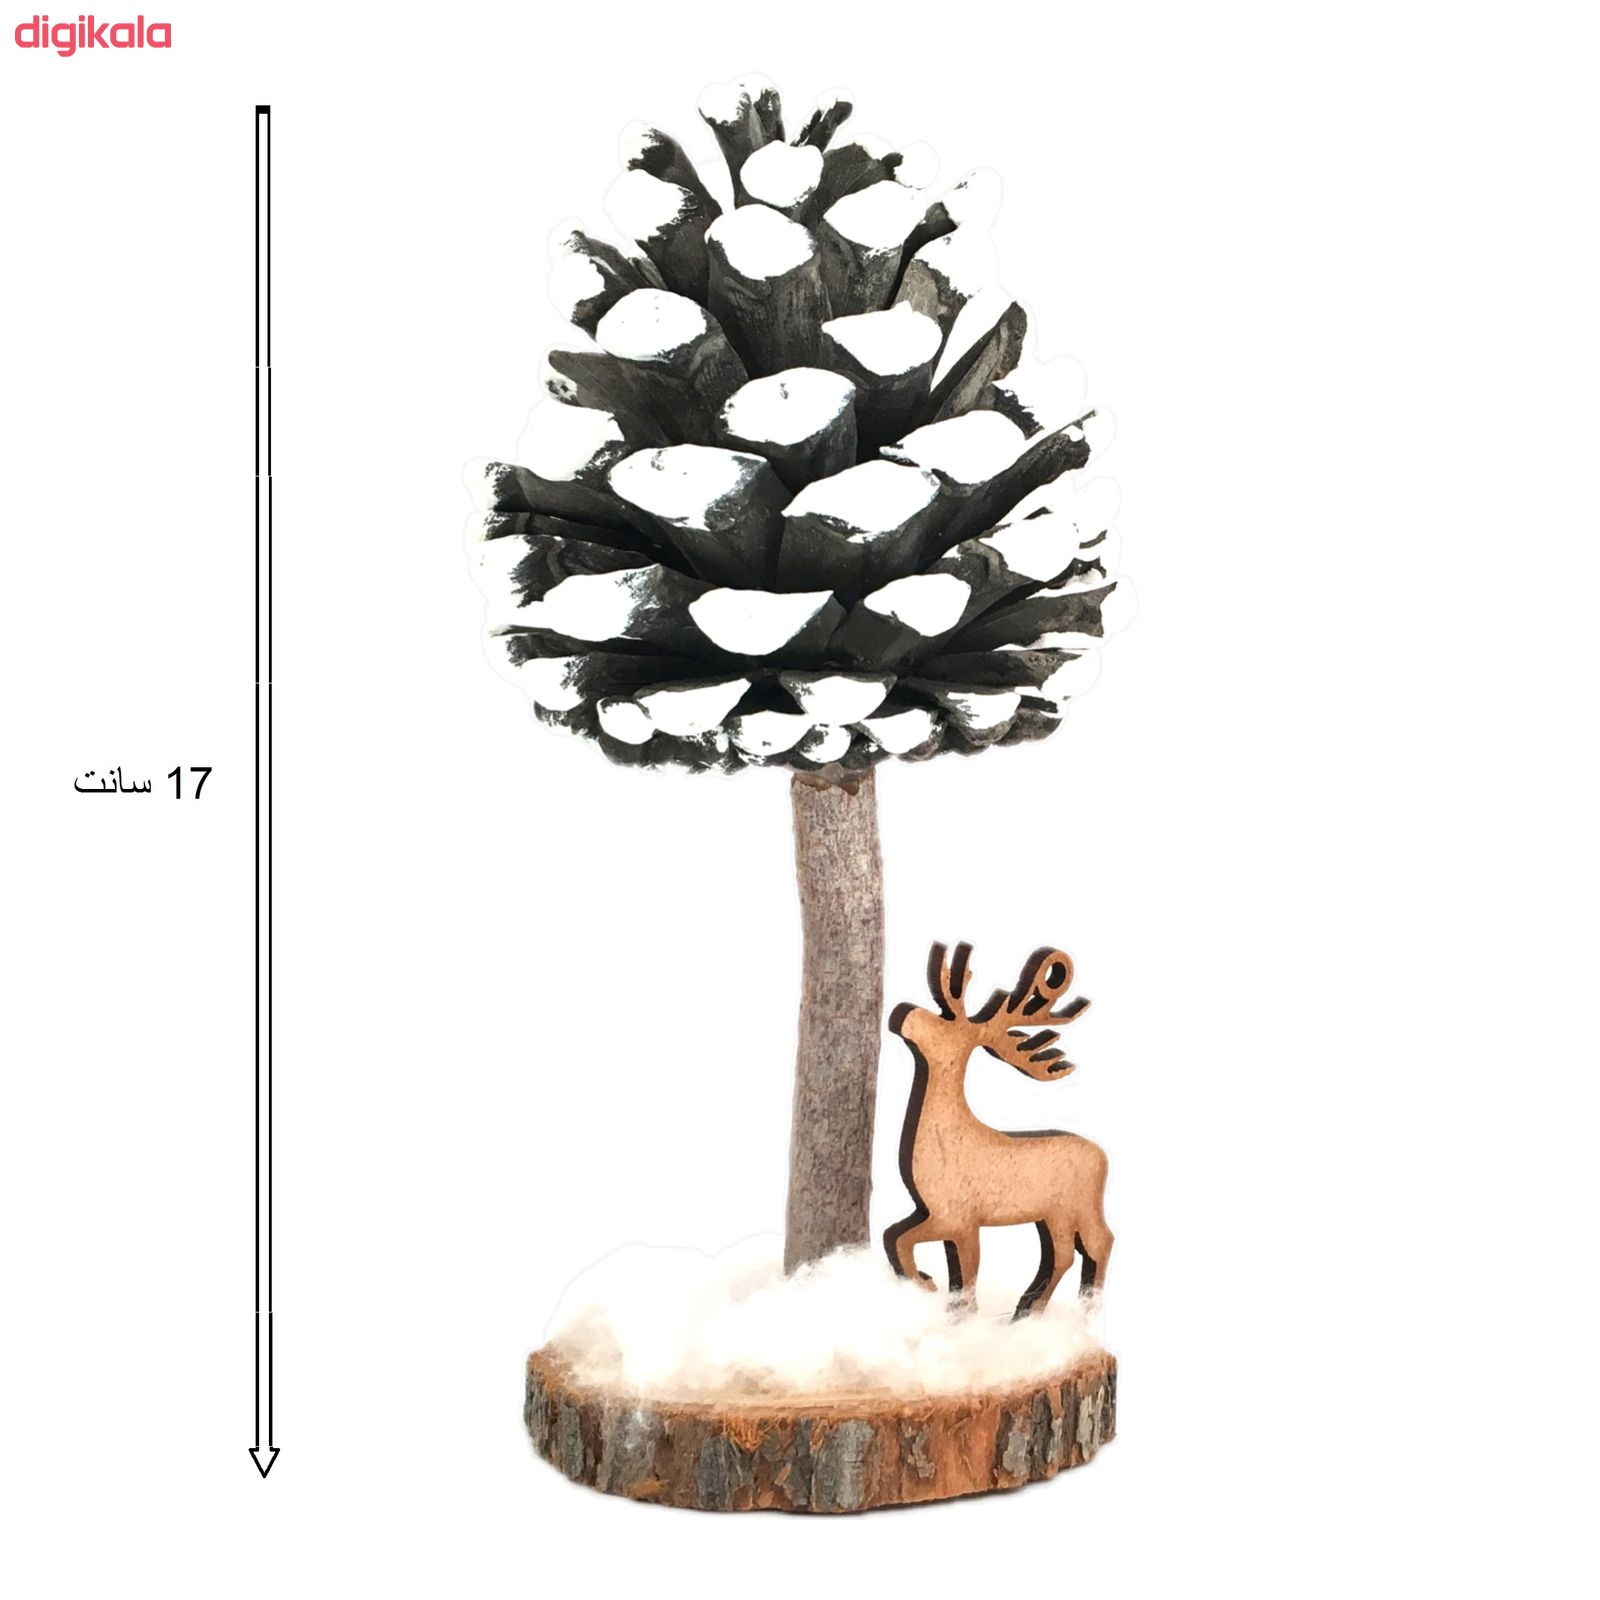  خرید اینترنتی با تخفیف ویژه استند تزئینی مدل درخت کاج